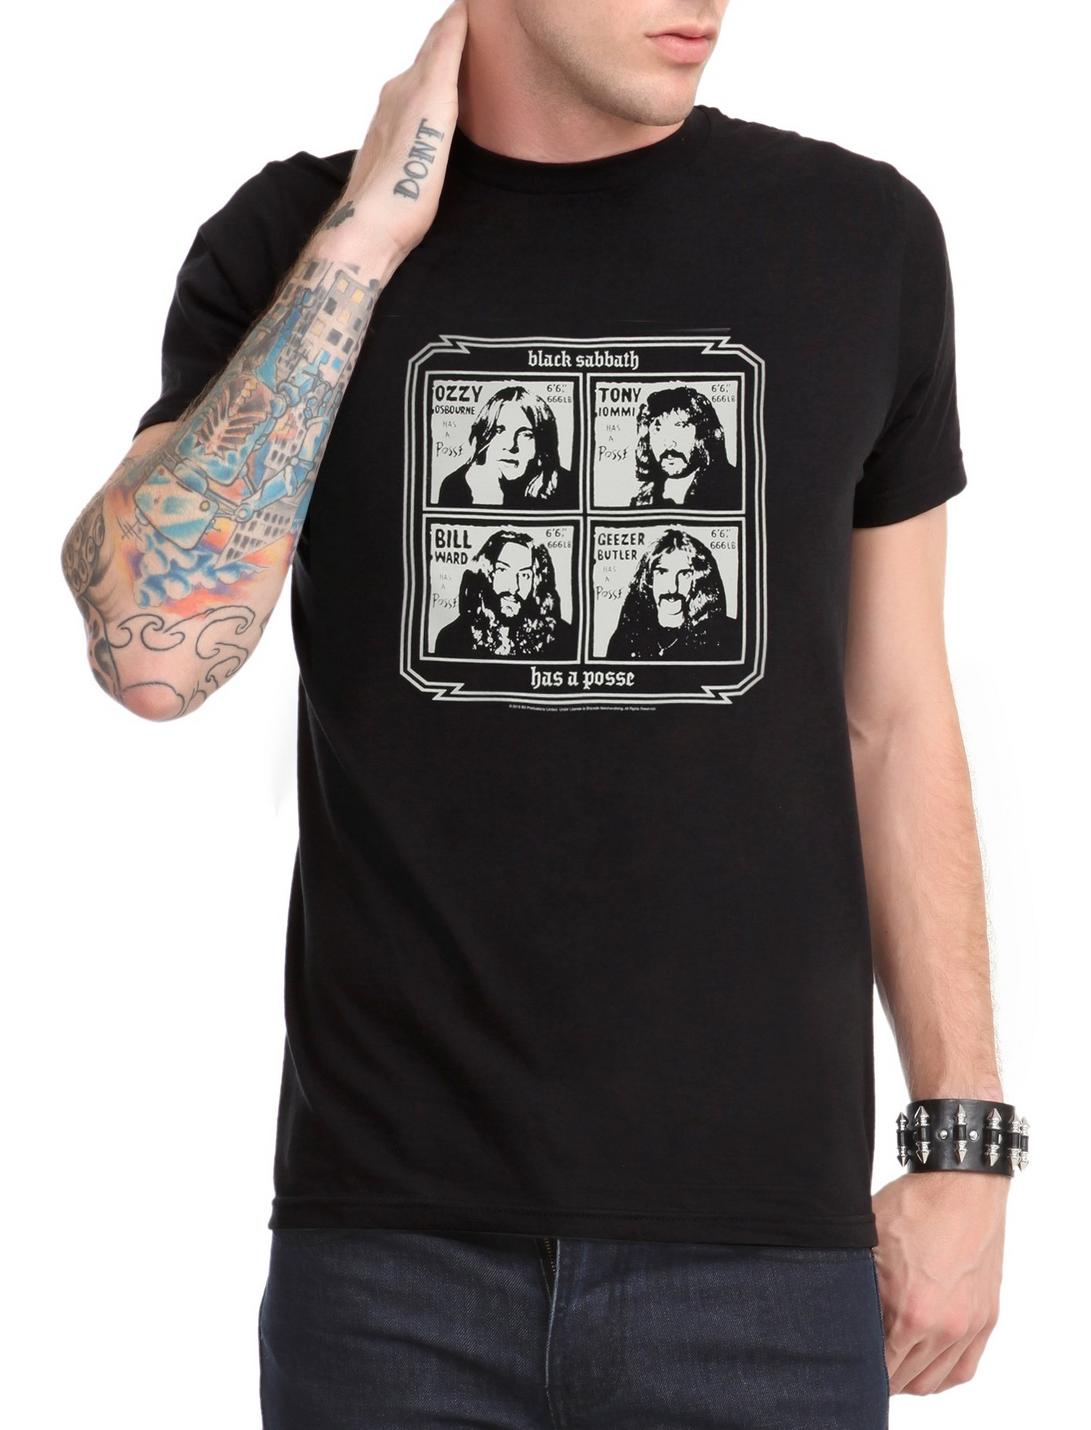 Black Sabbath Has A Posse T-Shirt, BLACK, hi-res